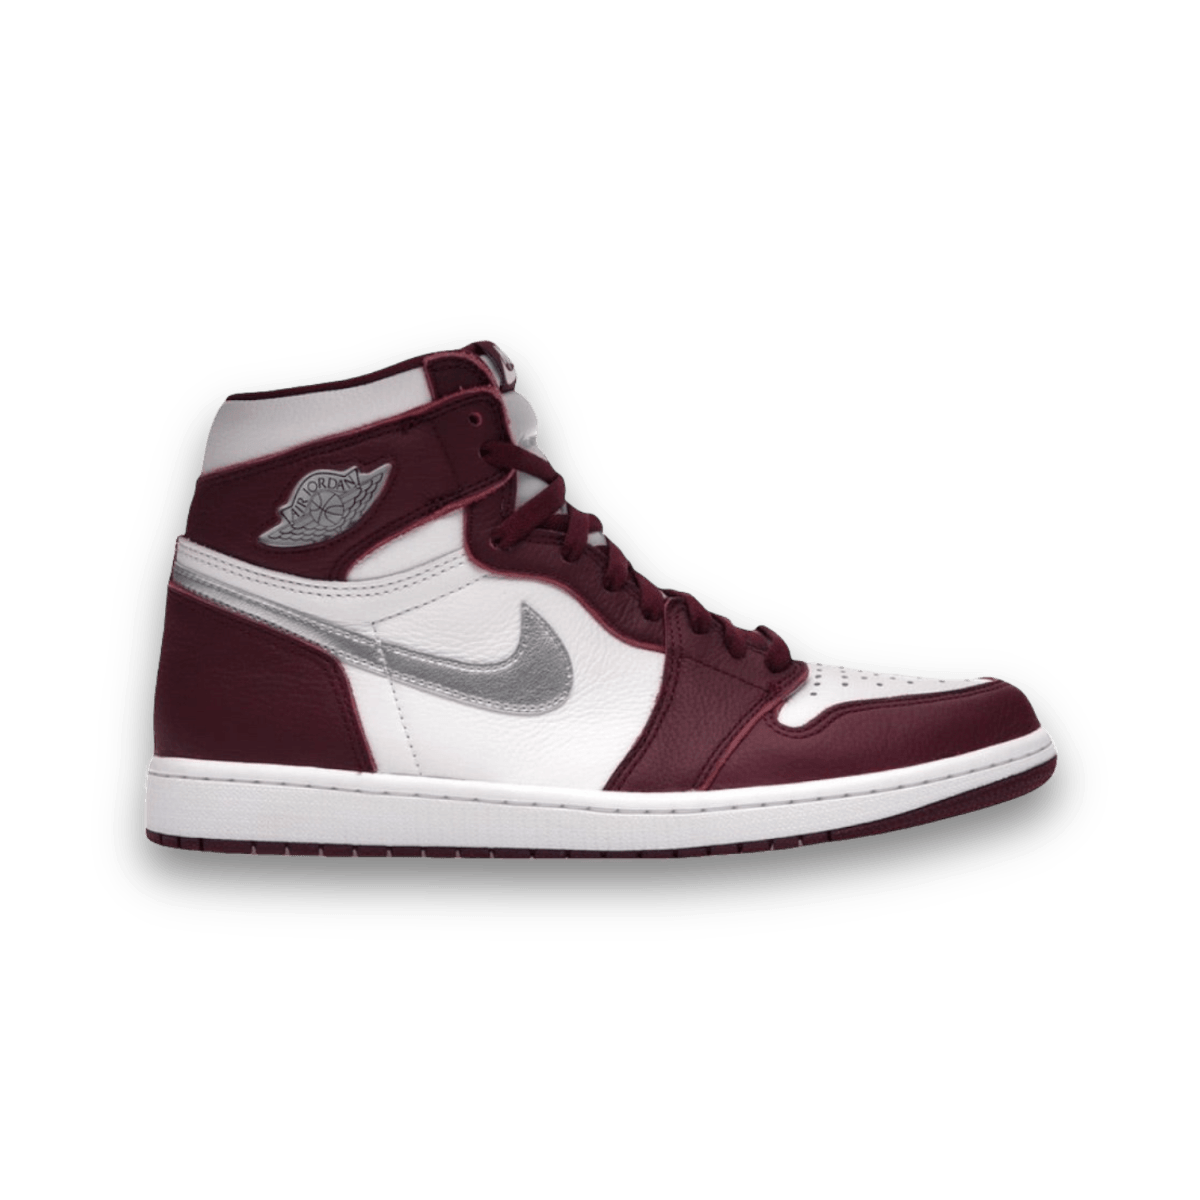 Jordan 1 Retro High OG Bordeaux - sneaker - High Sneaker - Jordan - Jawns on Fire